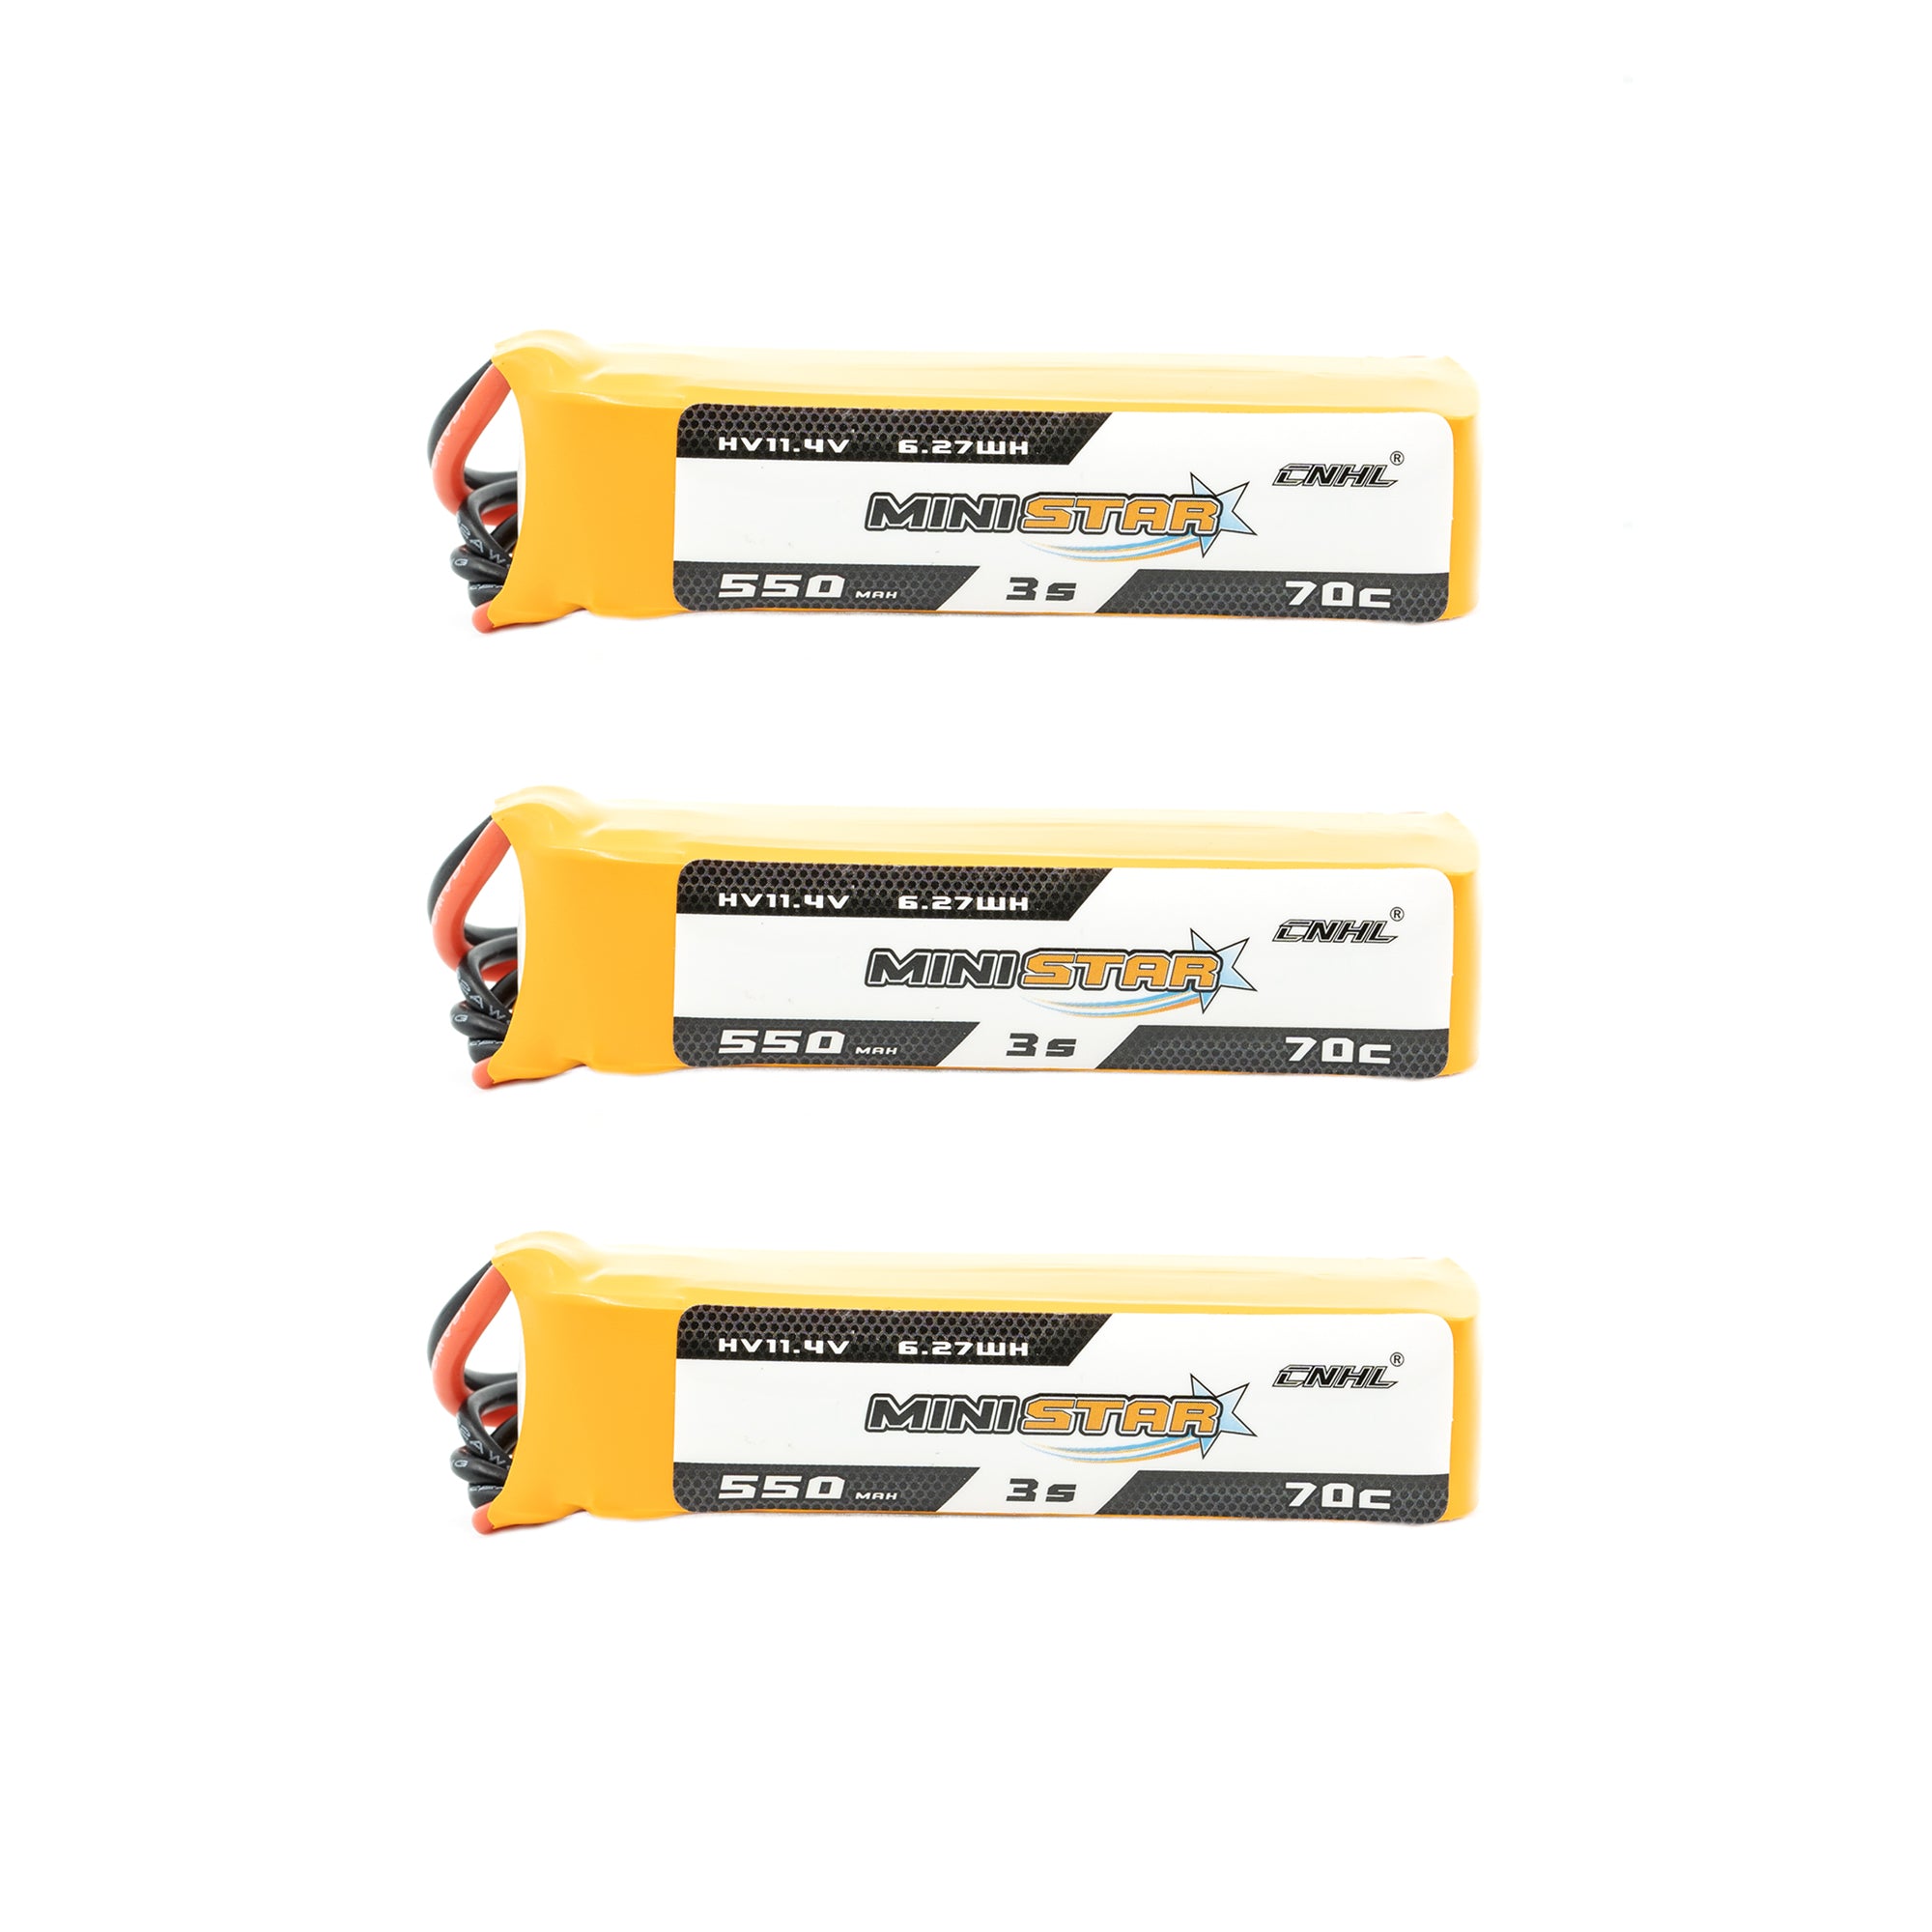 Chinahobbyline CNHL Ministar 550MAH 11.4V 3S 70C HV Lipo Battery (3 Pack) [DG]